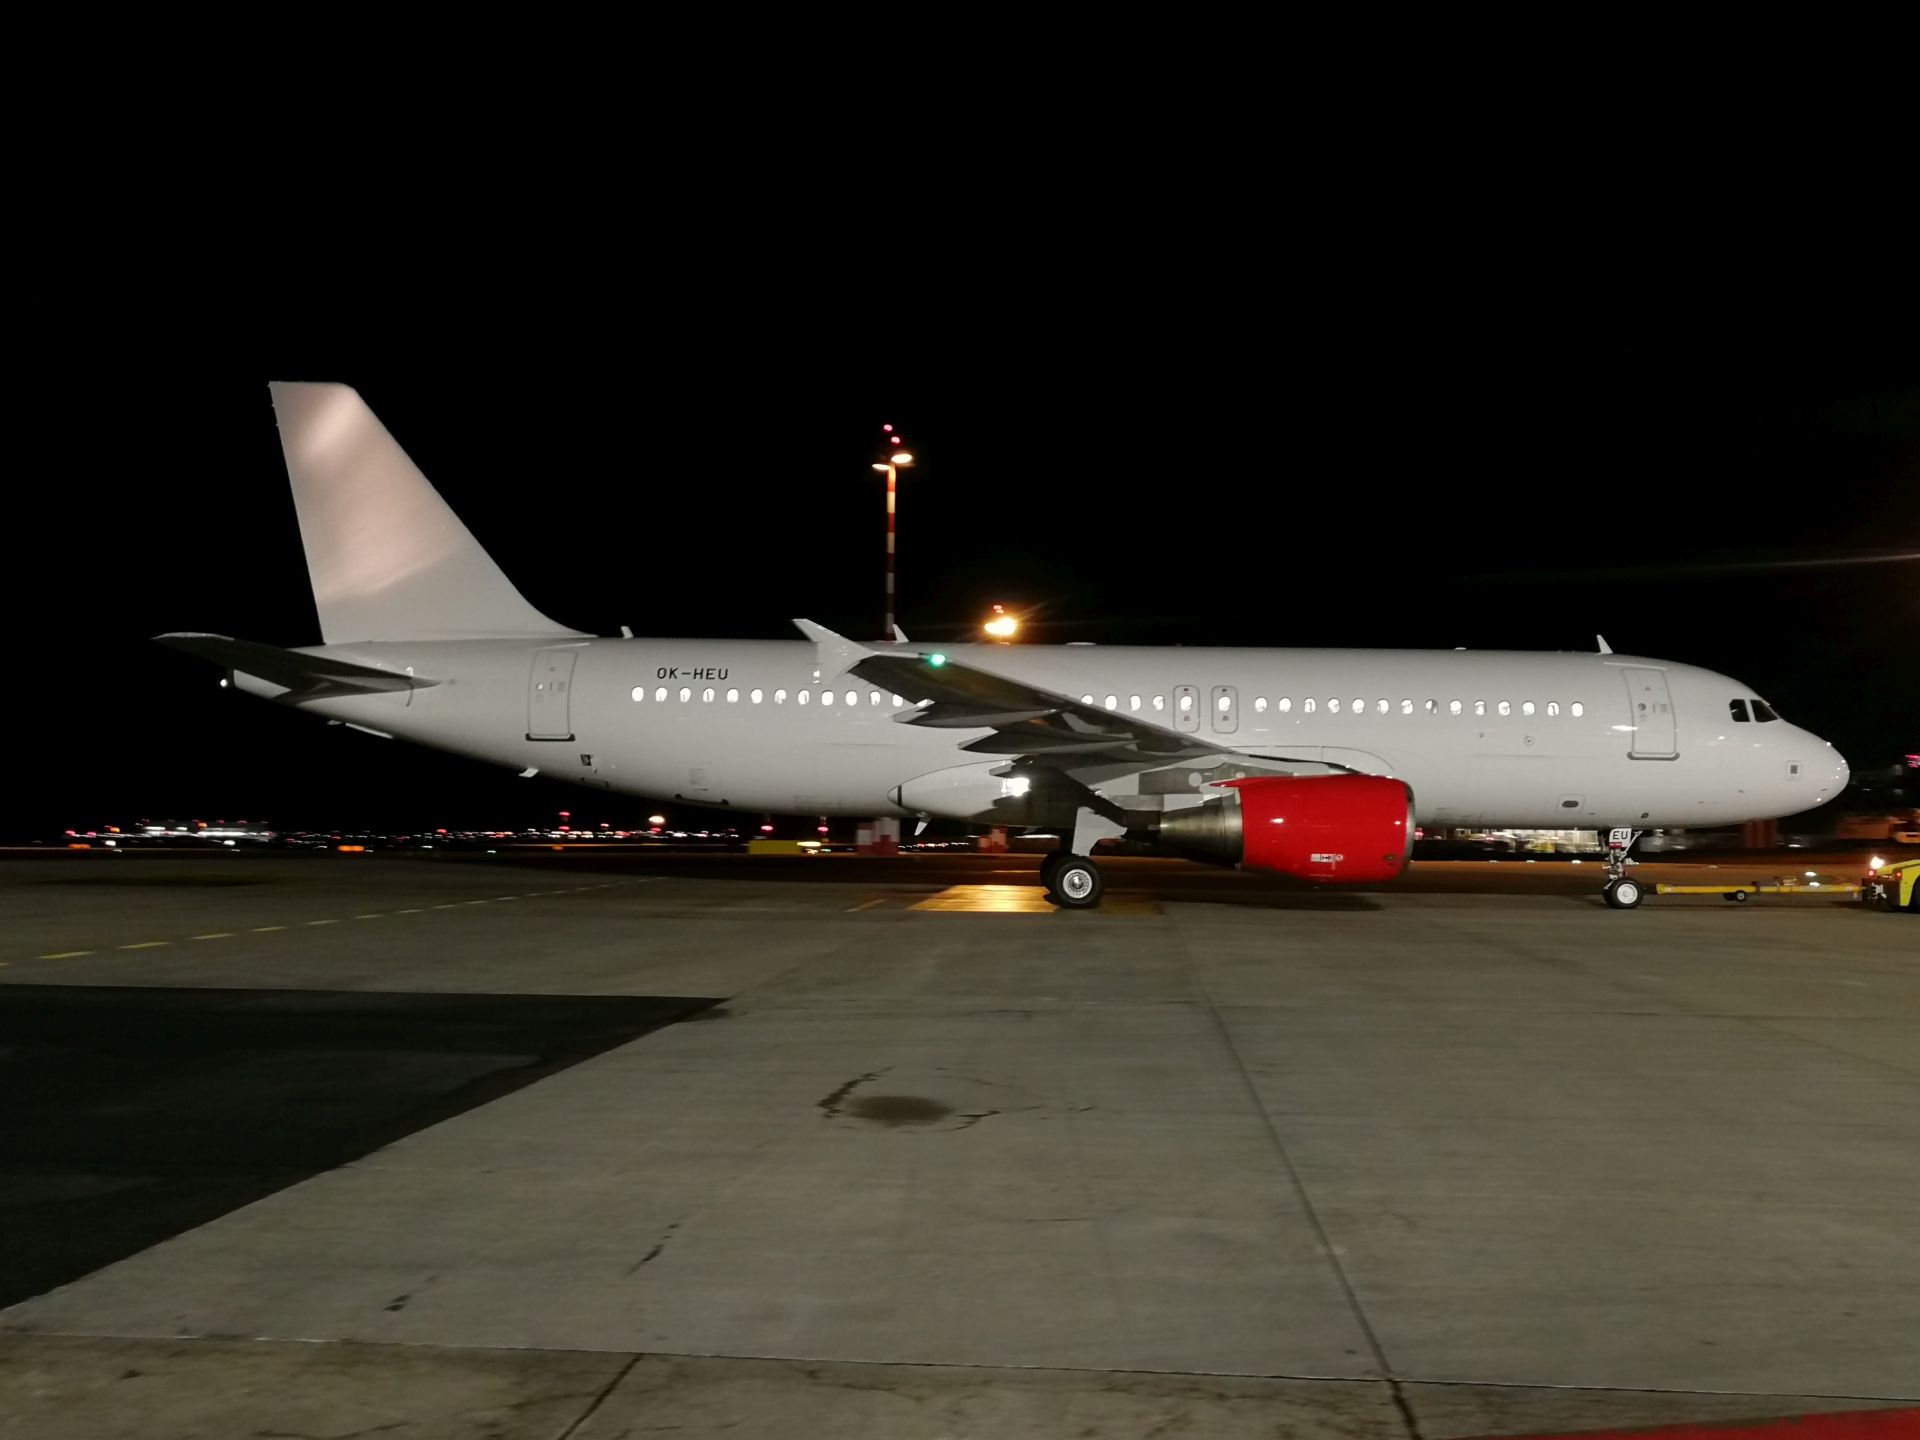 Airbus A320 registrace OK-HEU. Foto: Centaureax